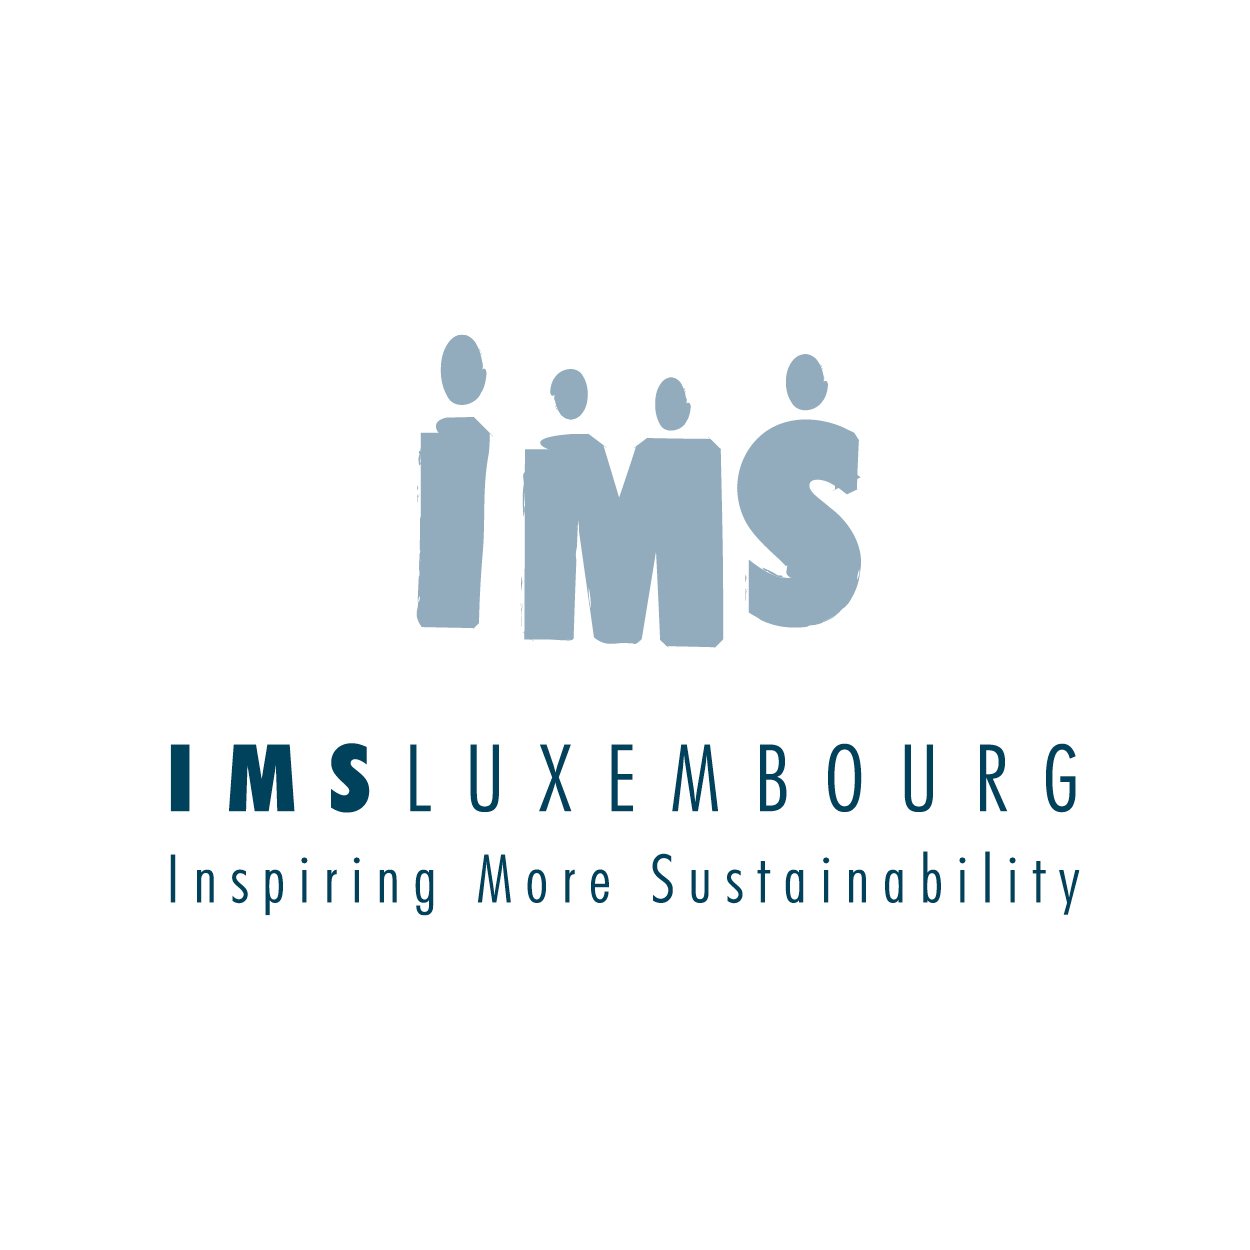 IMS_logo_square - Sarah Struvay.jpg